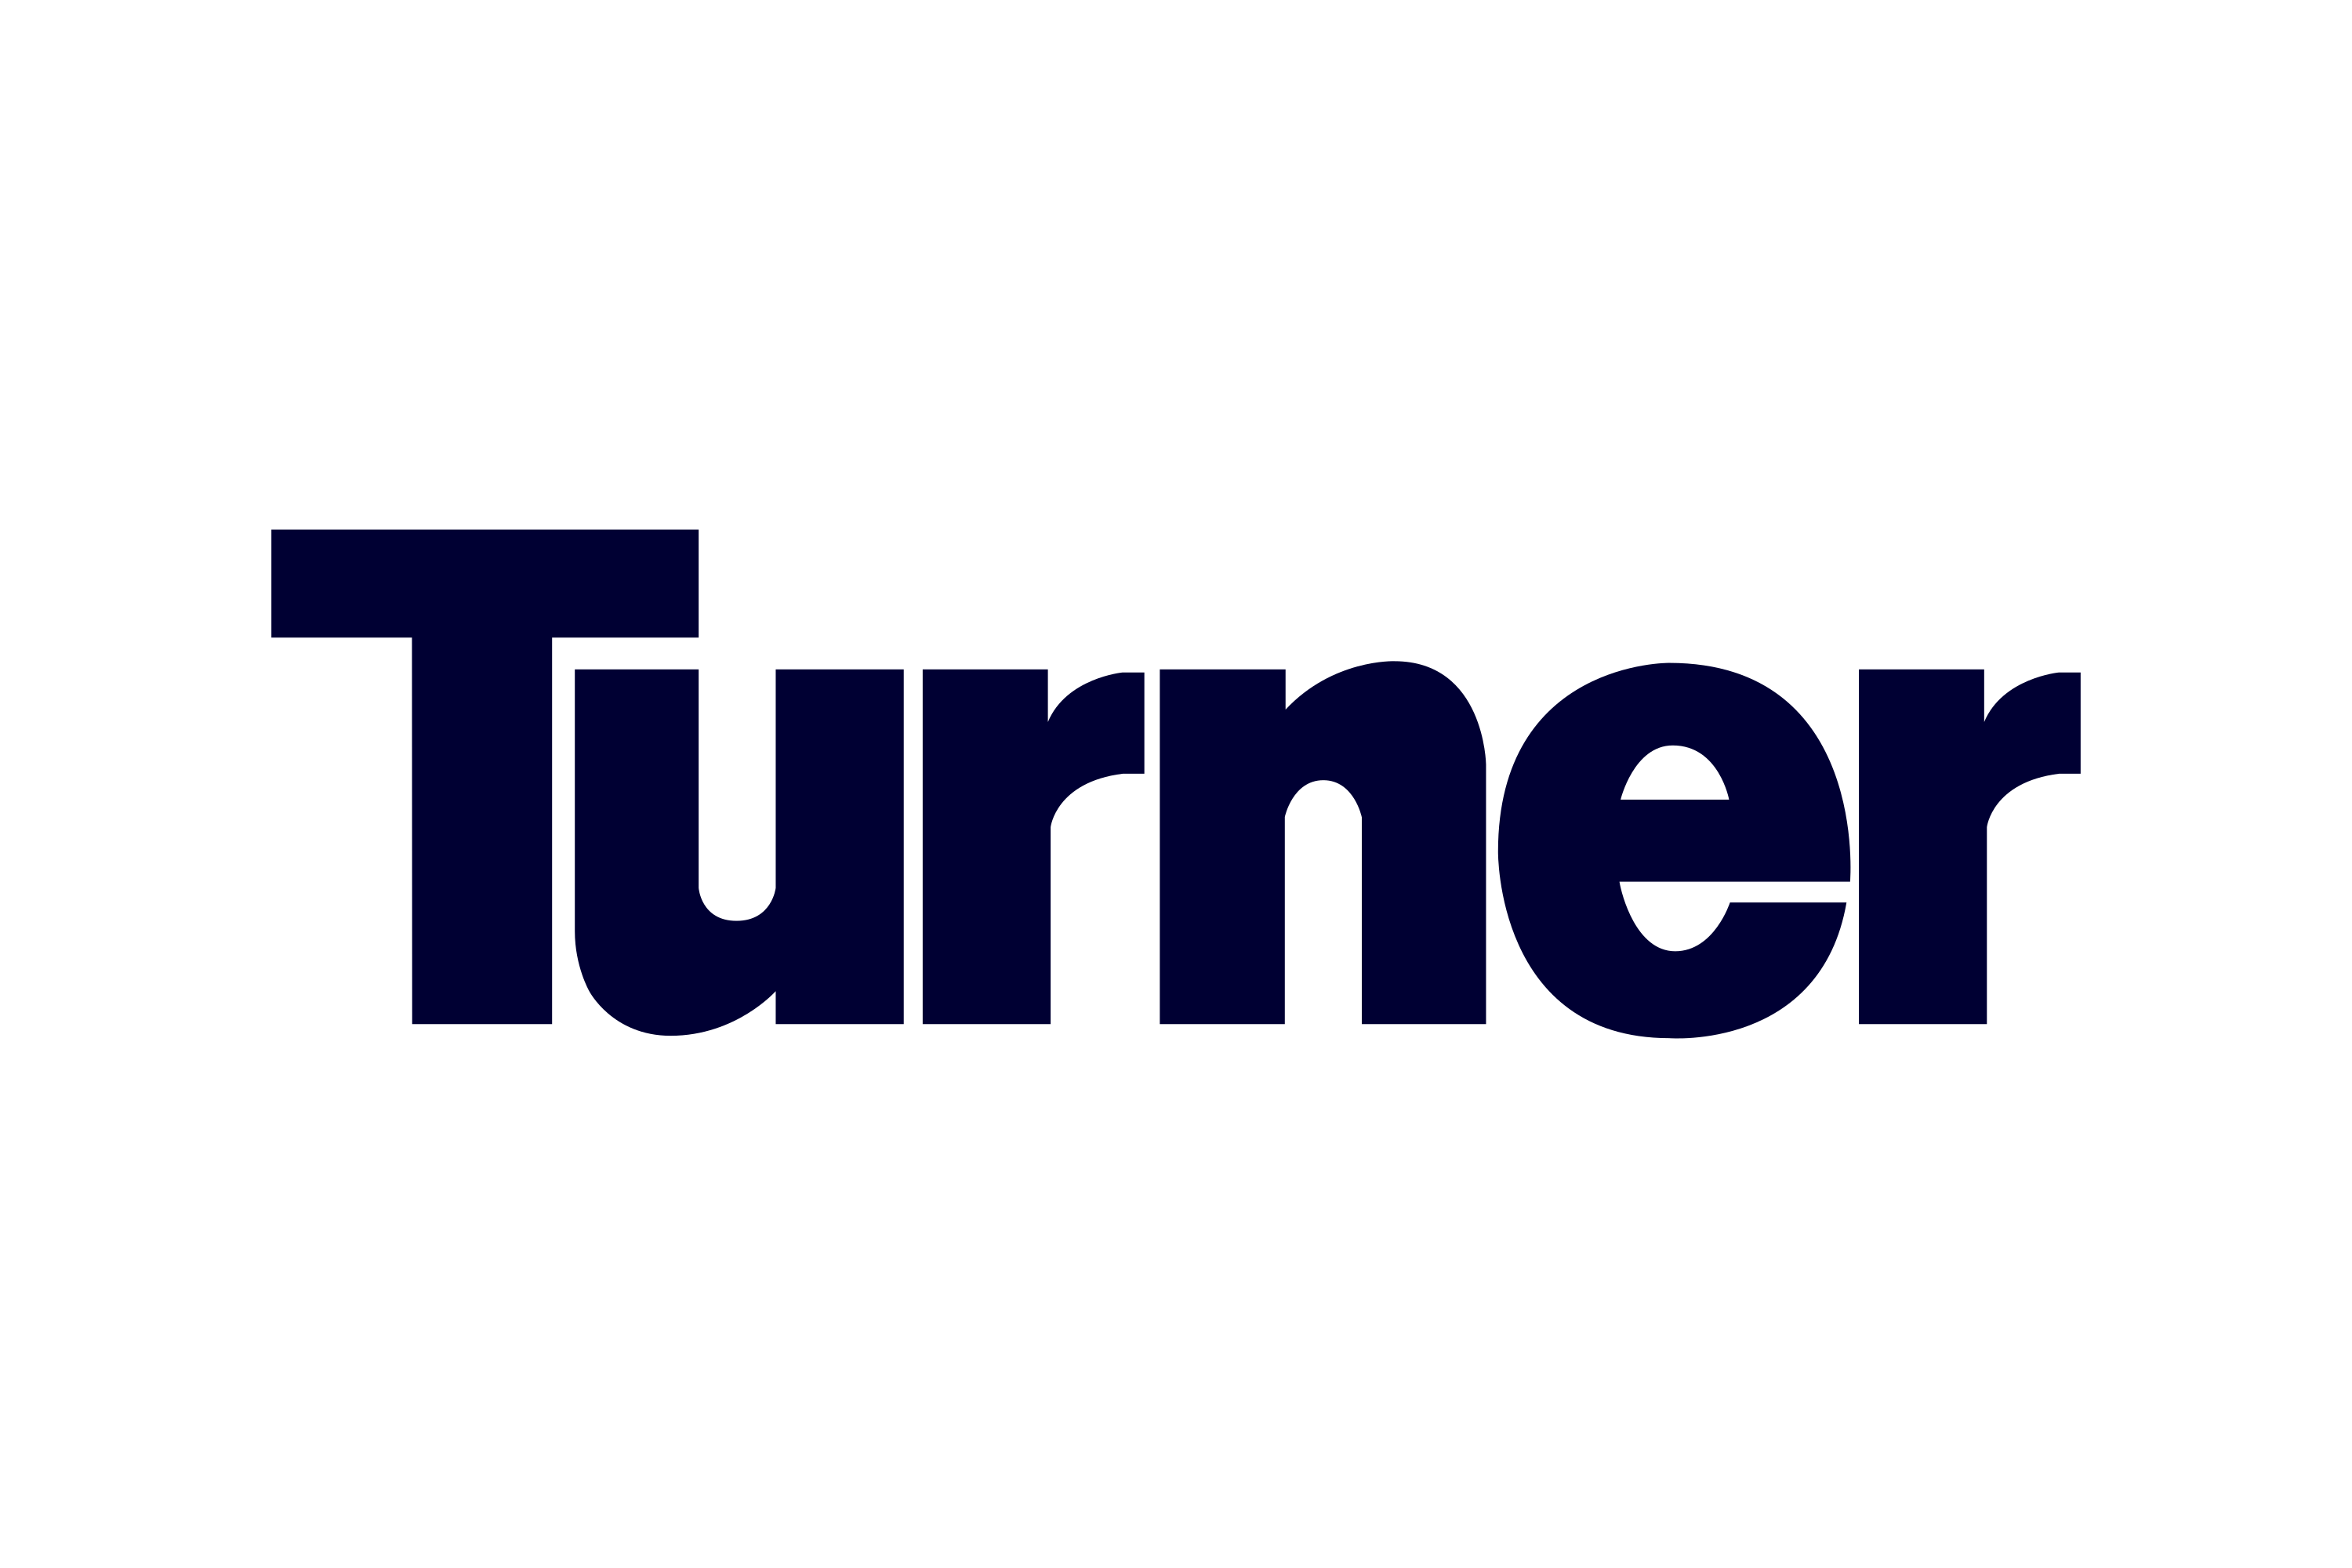 Download Turner Construction Logo in SVG Vector or PNG File Format